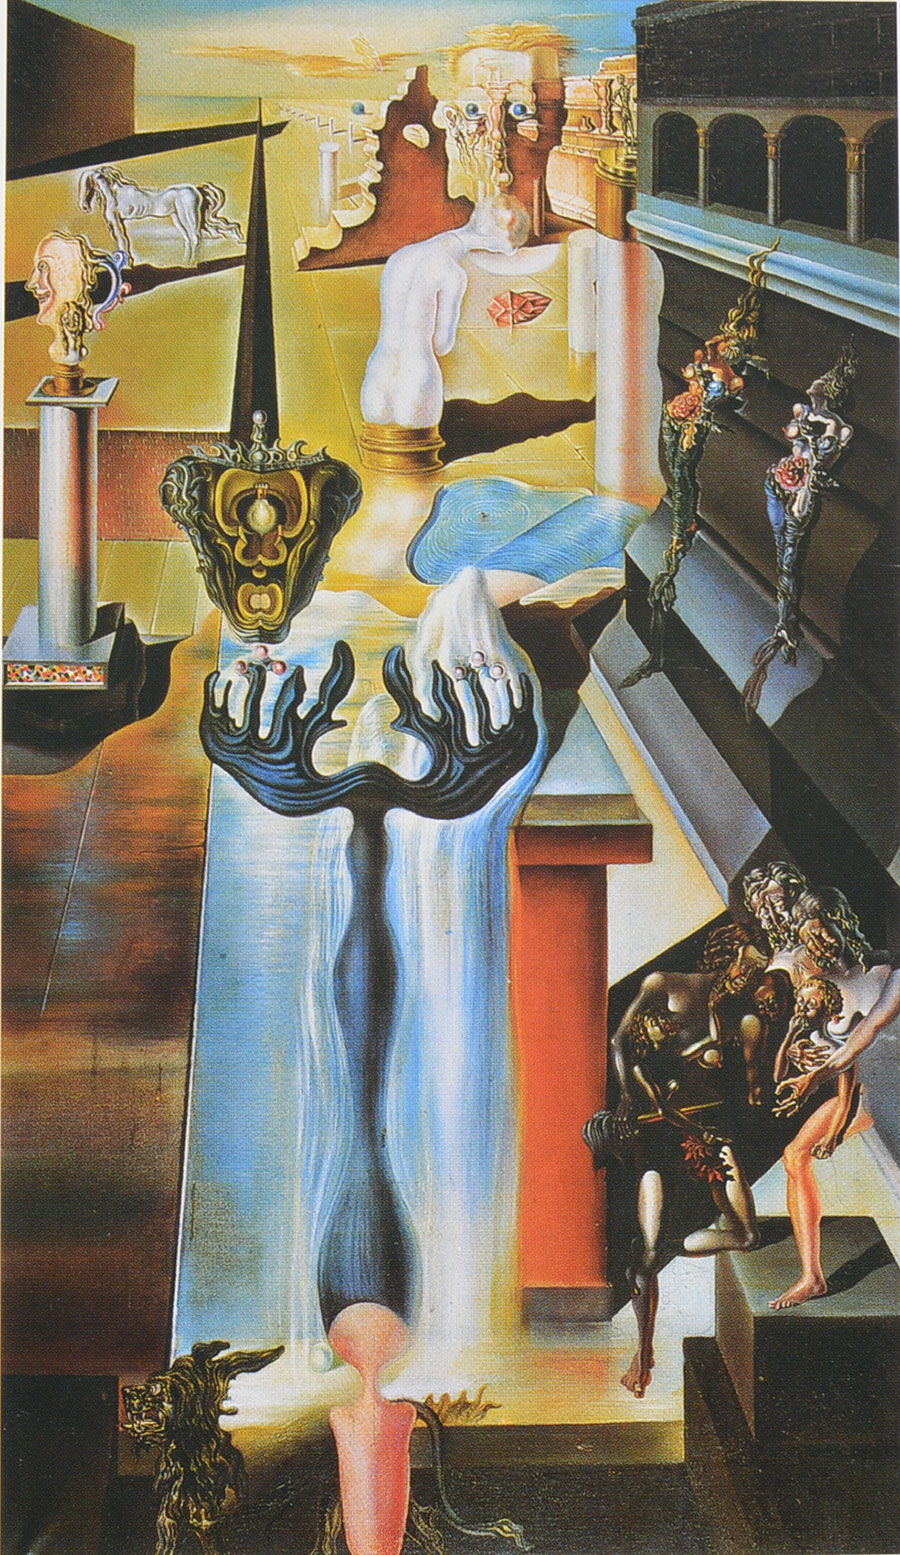 Dalí - El hombre invisible 